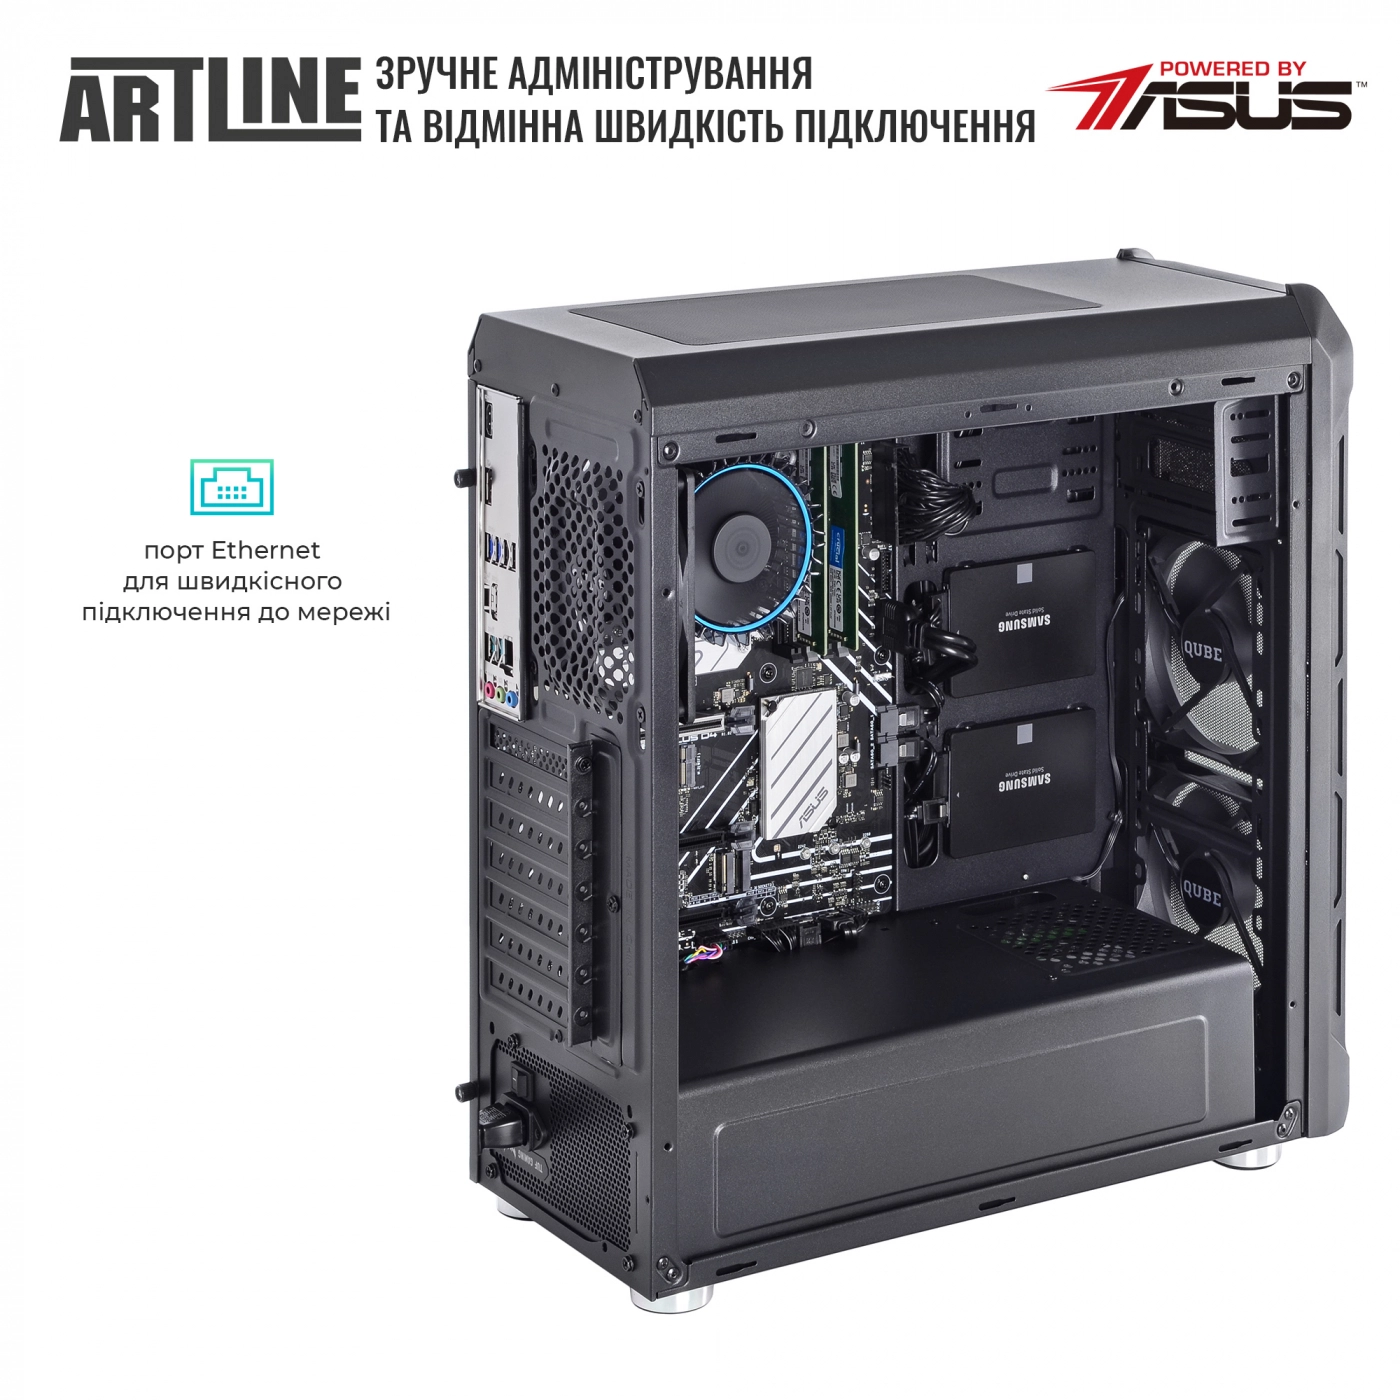 Купить Сервер ARTLINE Business T13v16 - фото 6